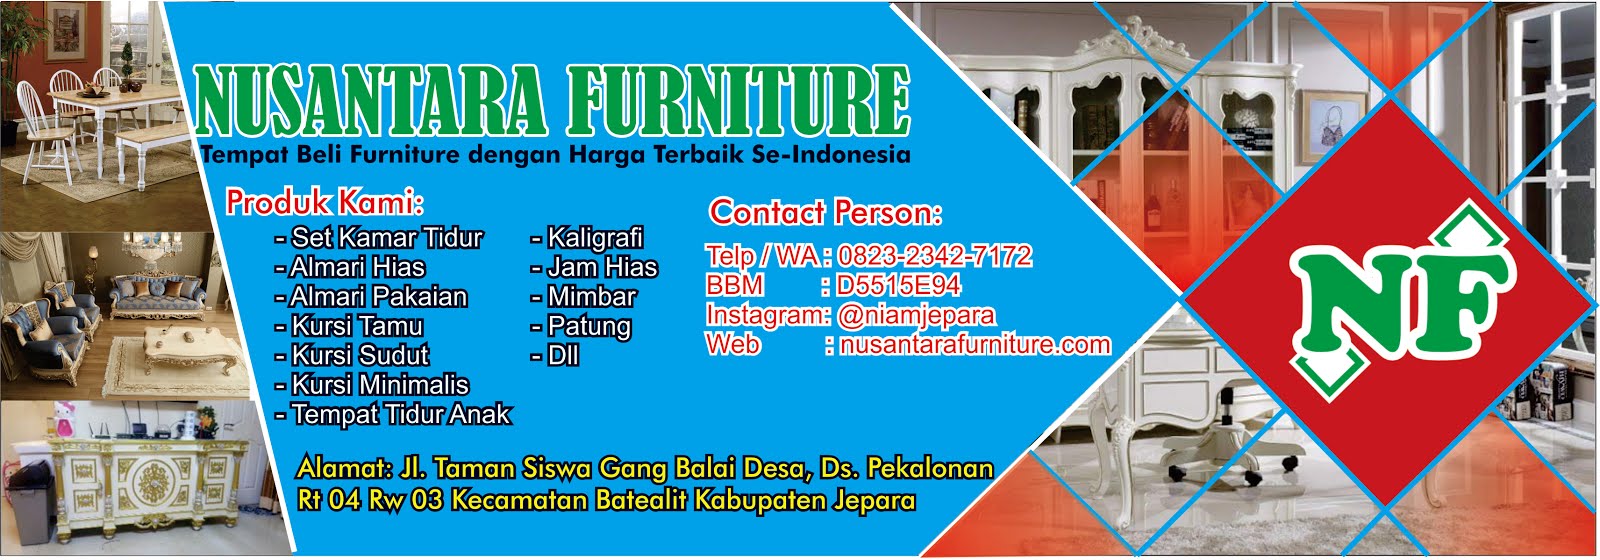 Nusantara Furniture